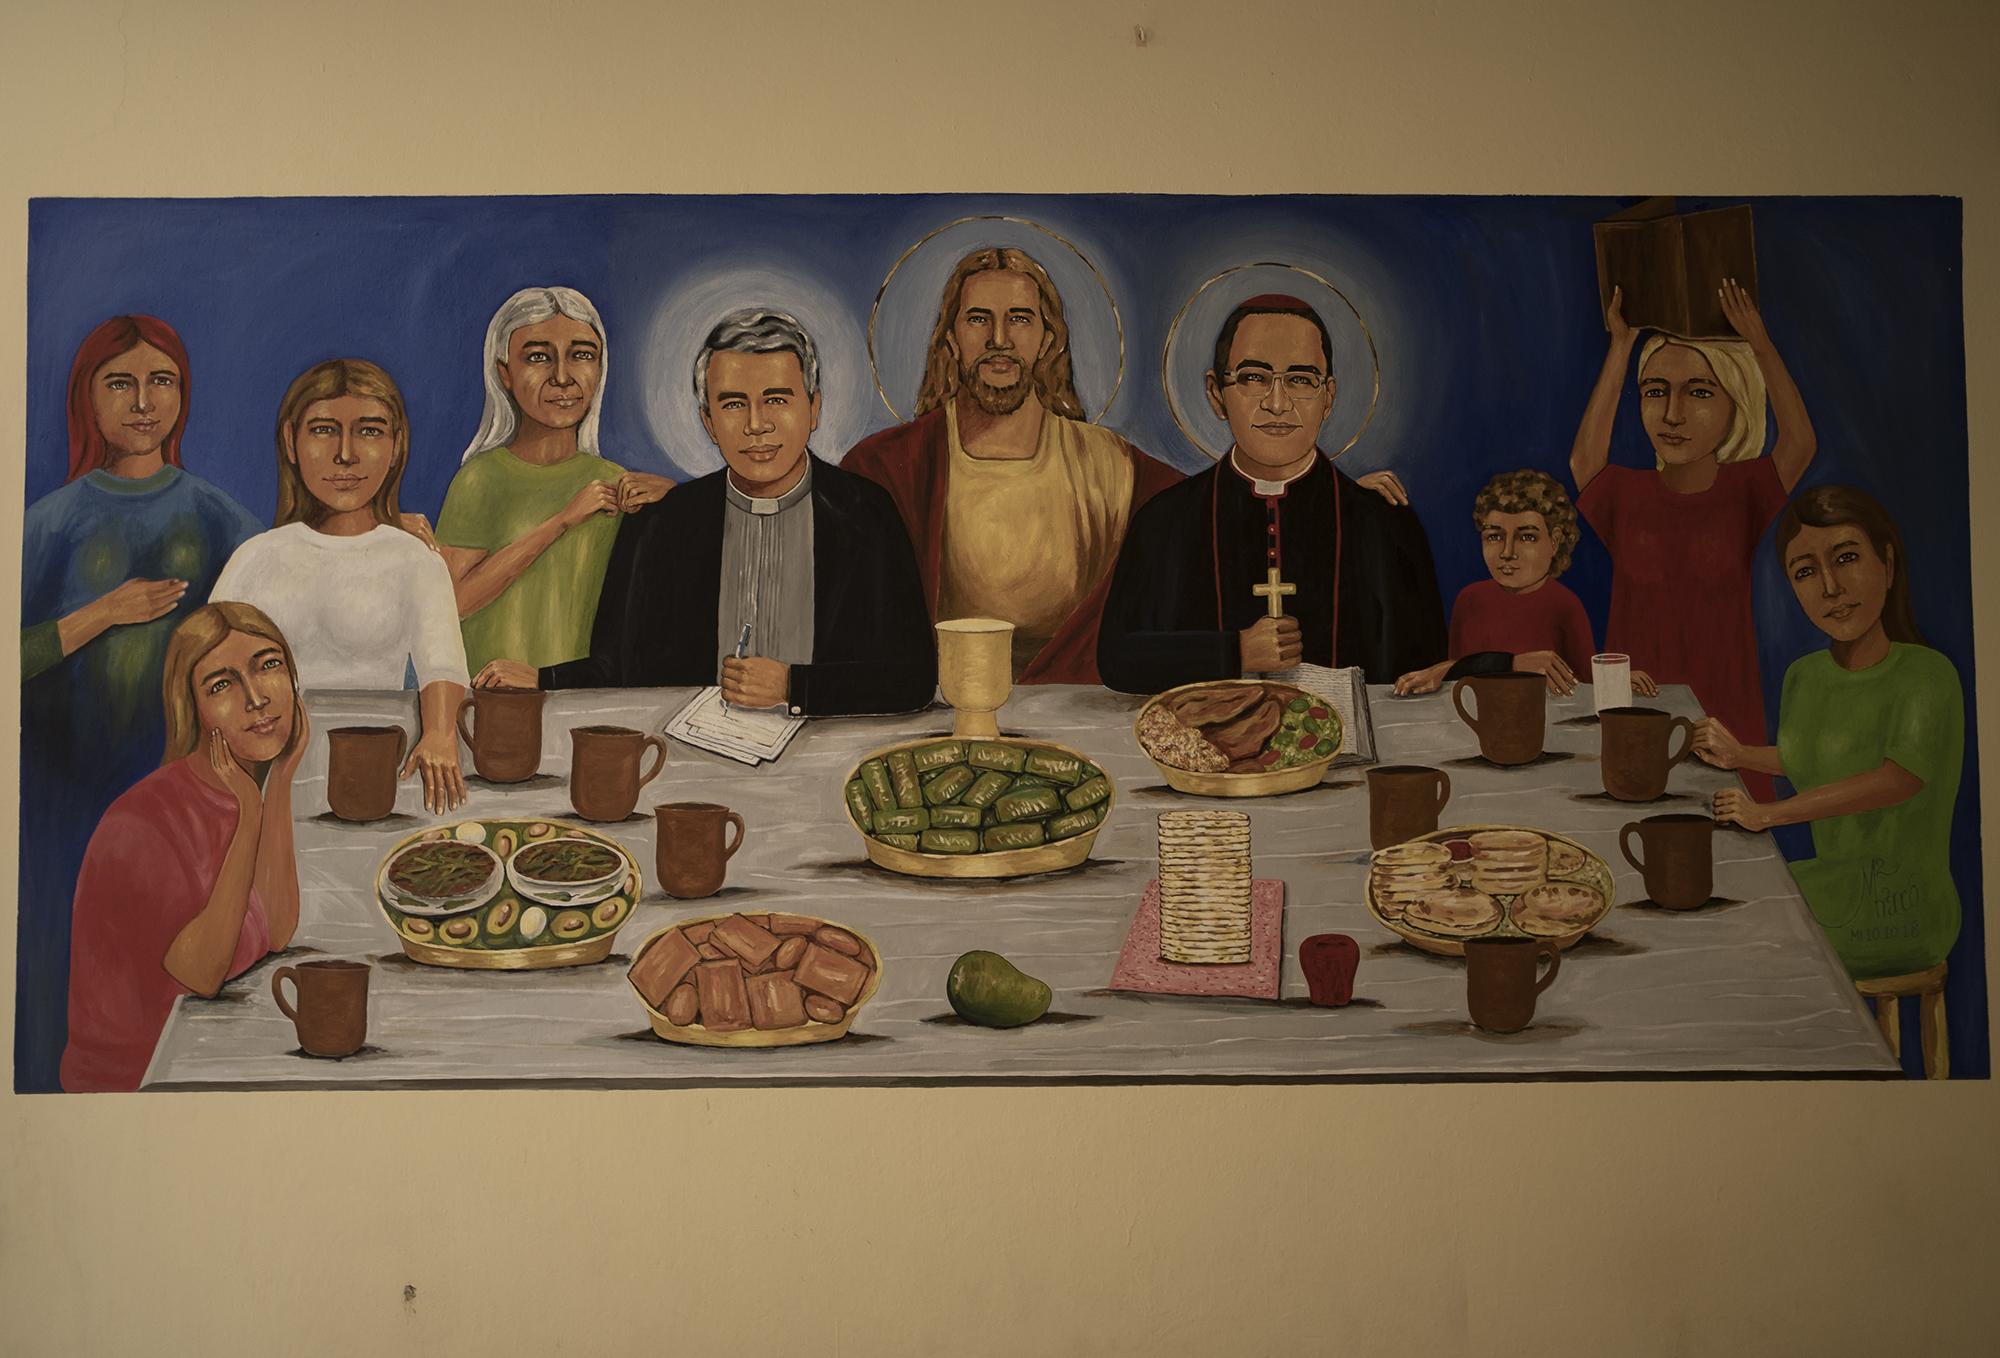 Representación de la Santa Cena en una pared de la iglesia católica de El Paisnal, donde se incluye a Rutilio Grande y San Romero. En la mesa, pupusas, tamales, marquesote, frijoles con aguacate y un mango.